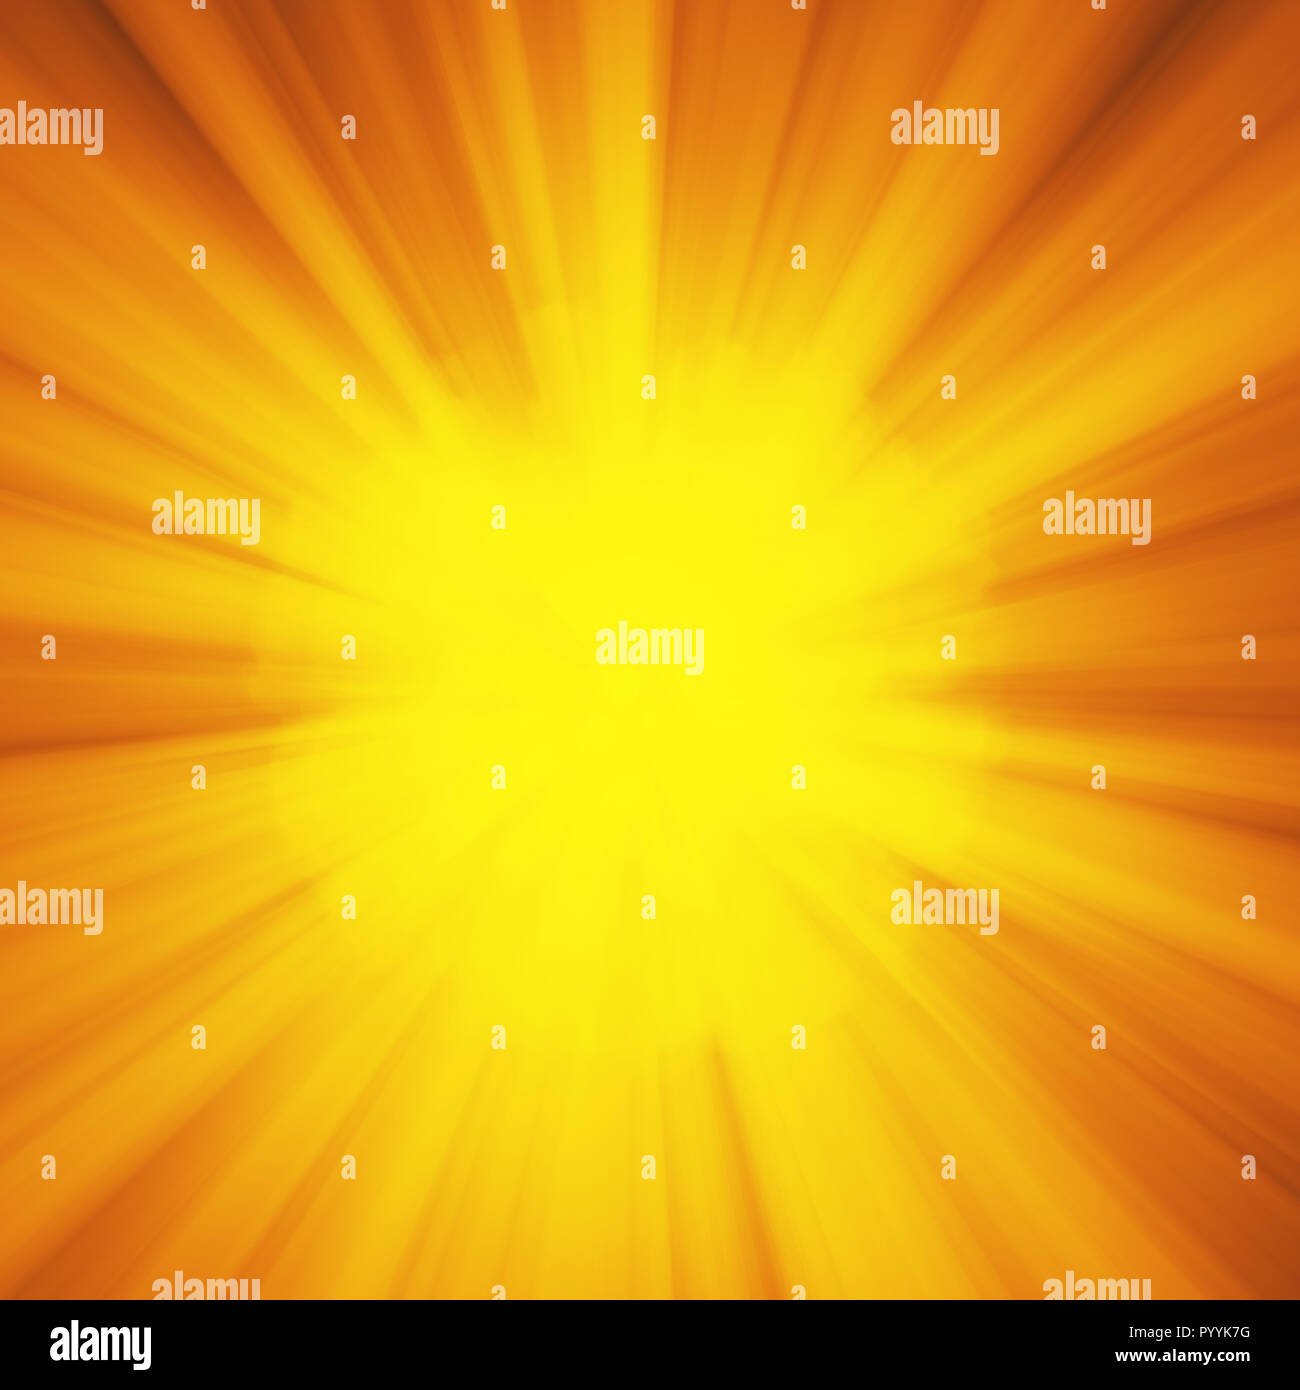 Hintergrund mit abstrakten Explosion oder hyperspeed Warp sun Gott strahlen. Helles orange gelb Light Strip Burst, Flash ray Blast. Abbildung mit Copyspace für Ihren Text Stockfoto